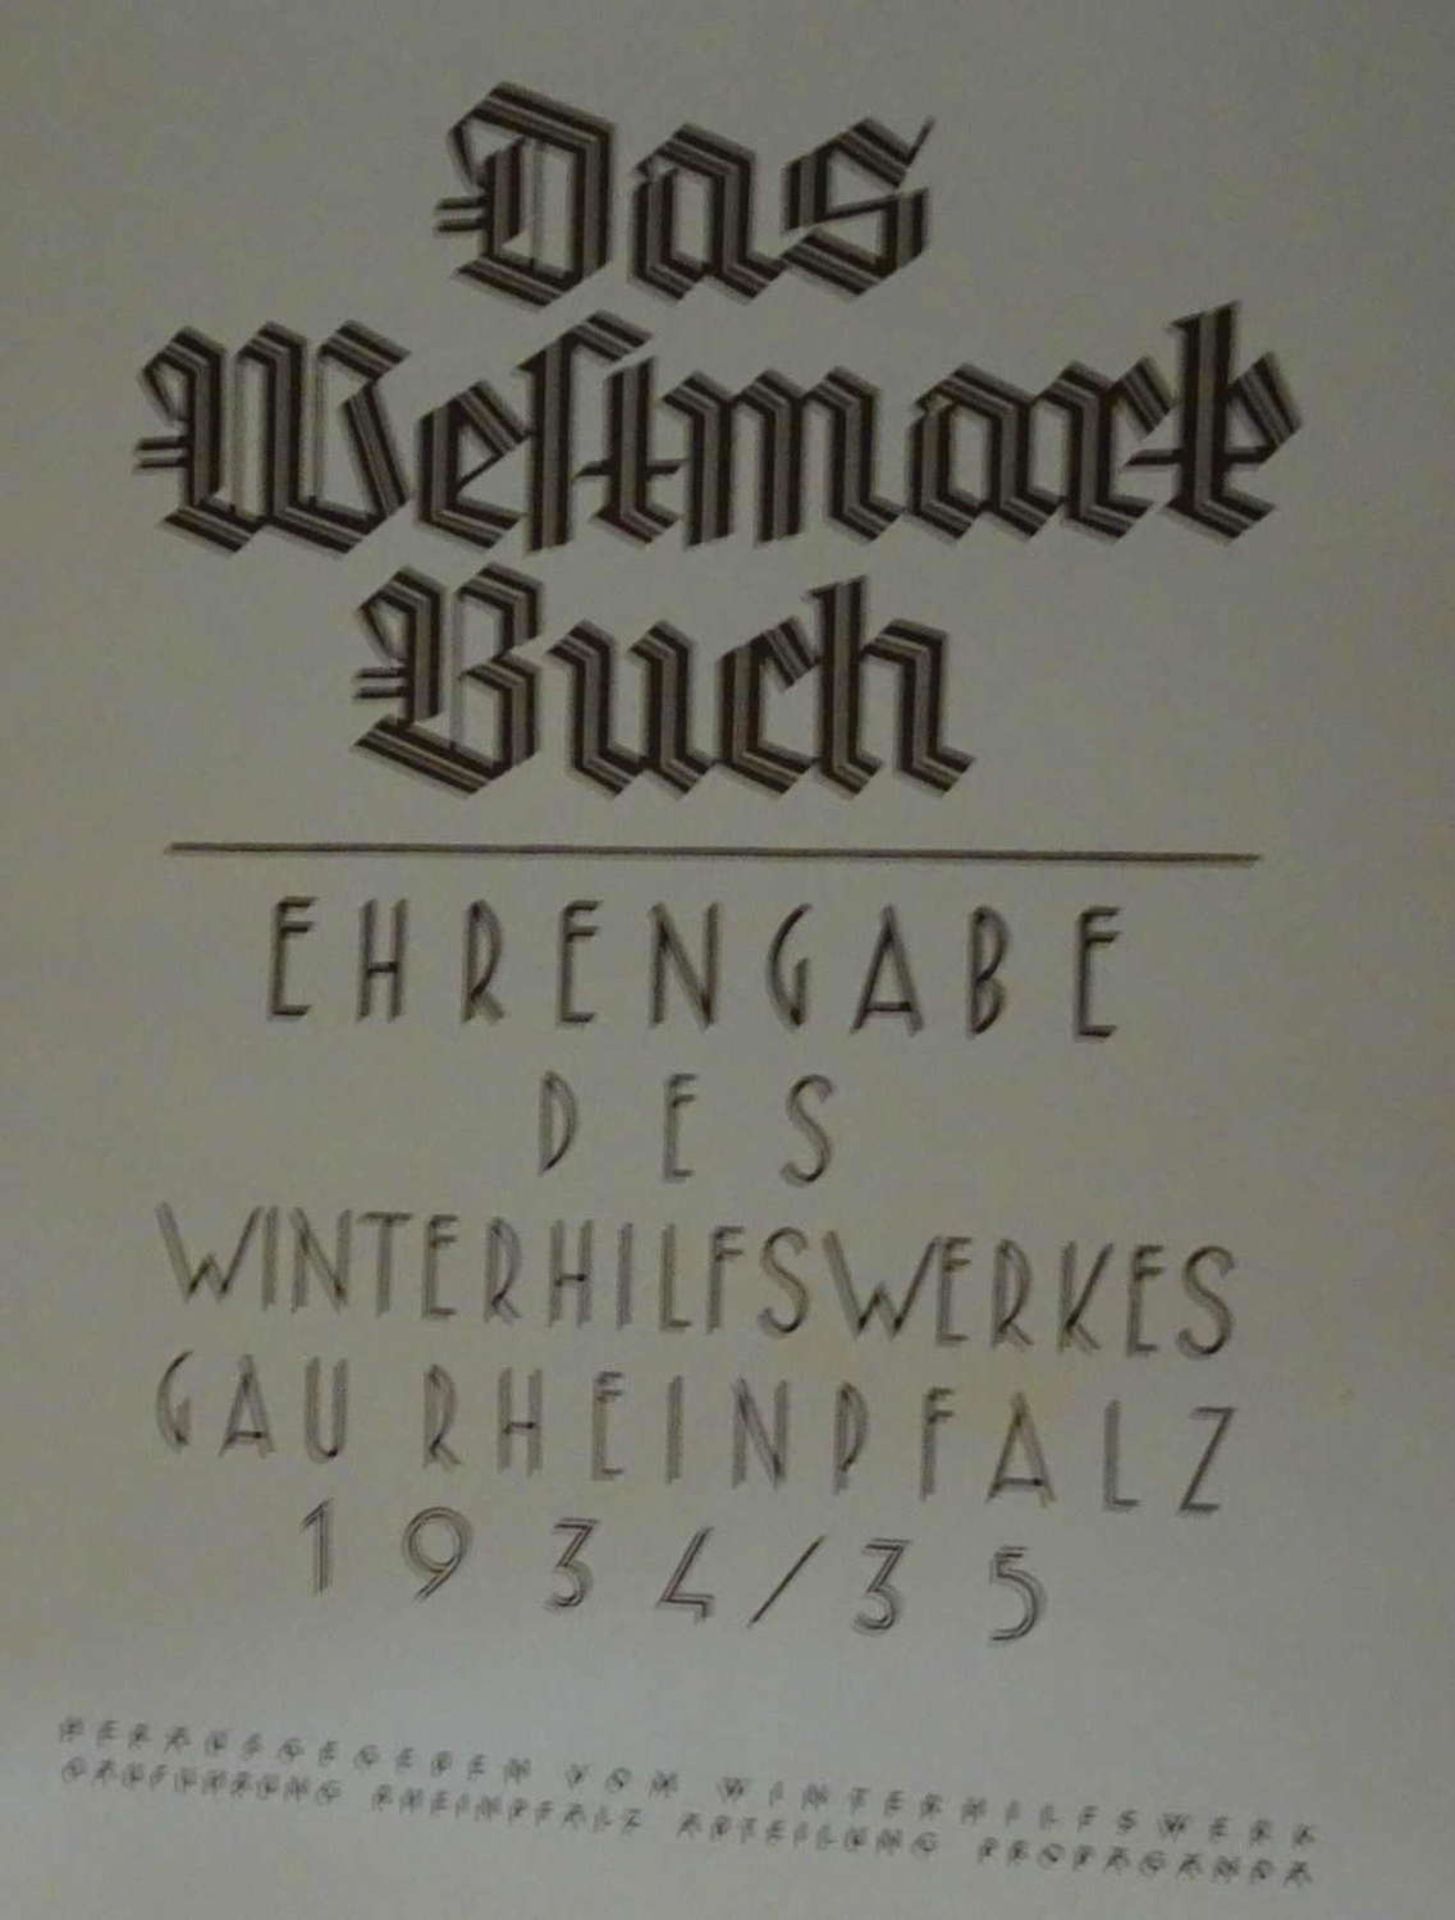 Winterhilfswerk - WHW - Amt für Volkswohlfahrt,:Das Westmark Buch, Ehrengabe des Winterhilfswerkes - Bild 2 aus 4